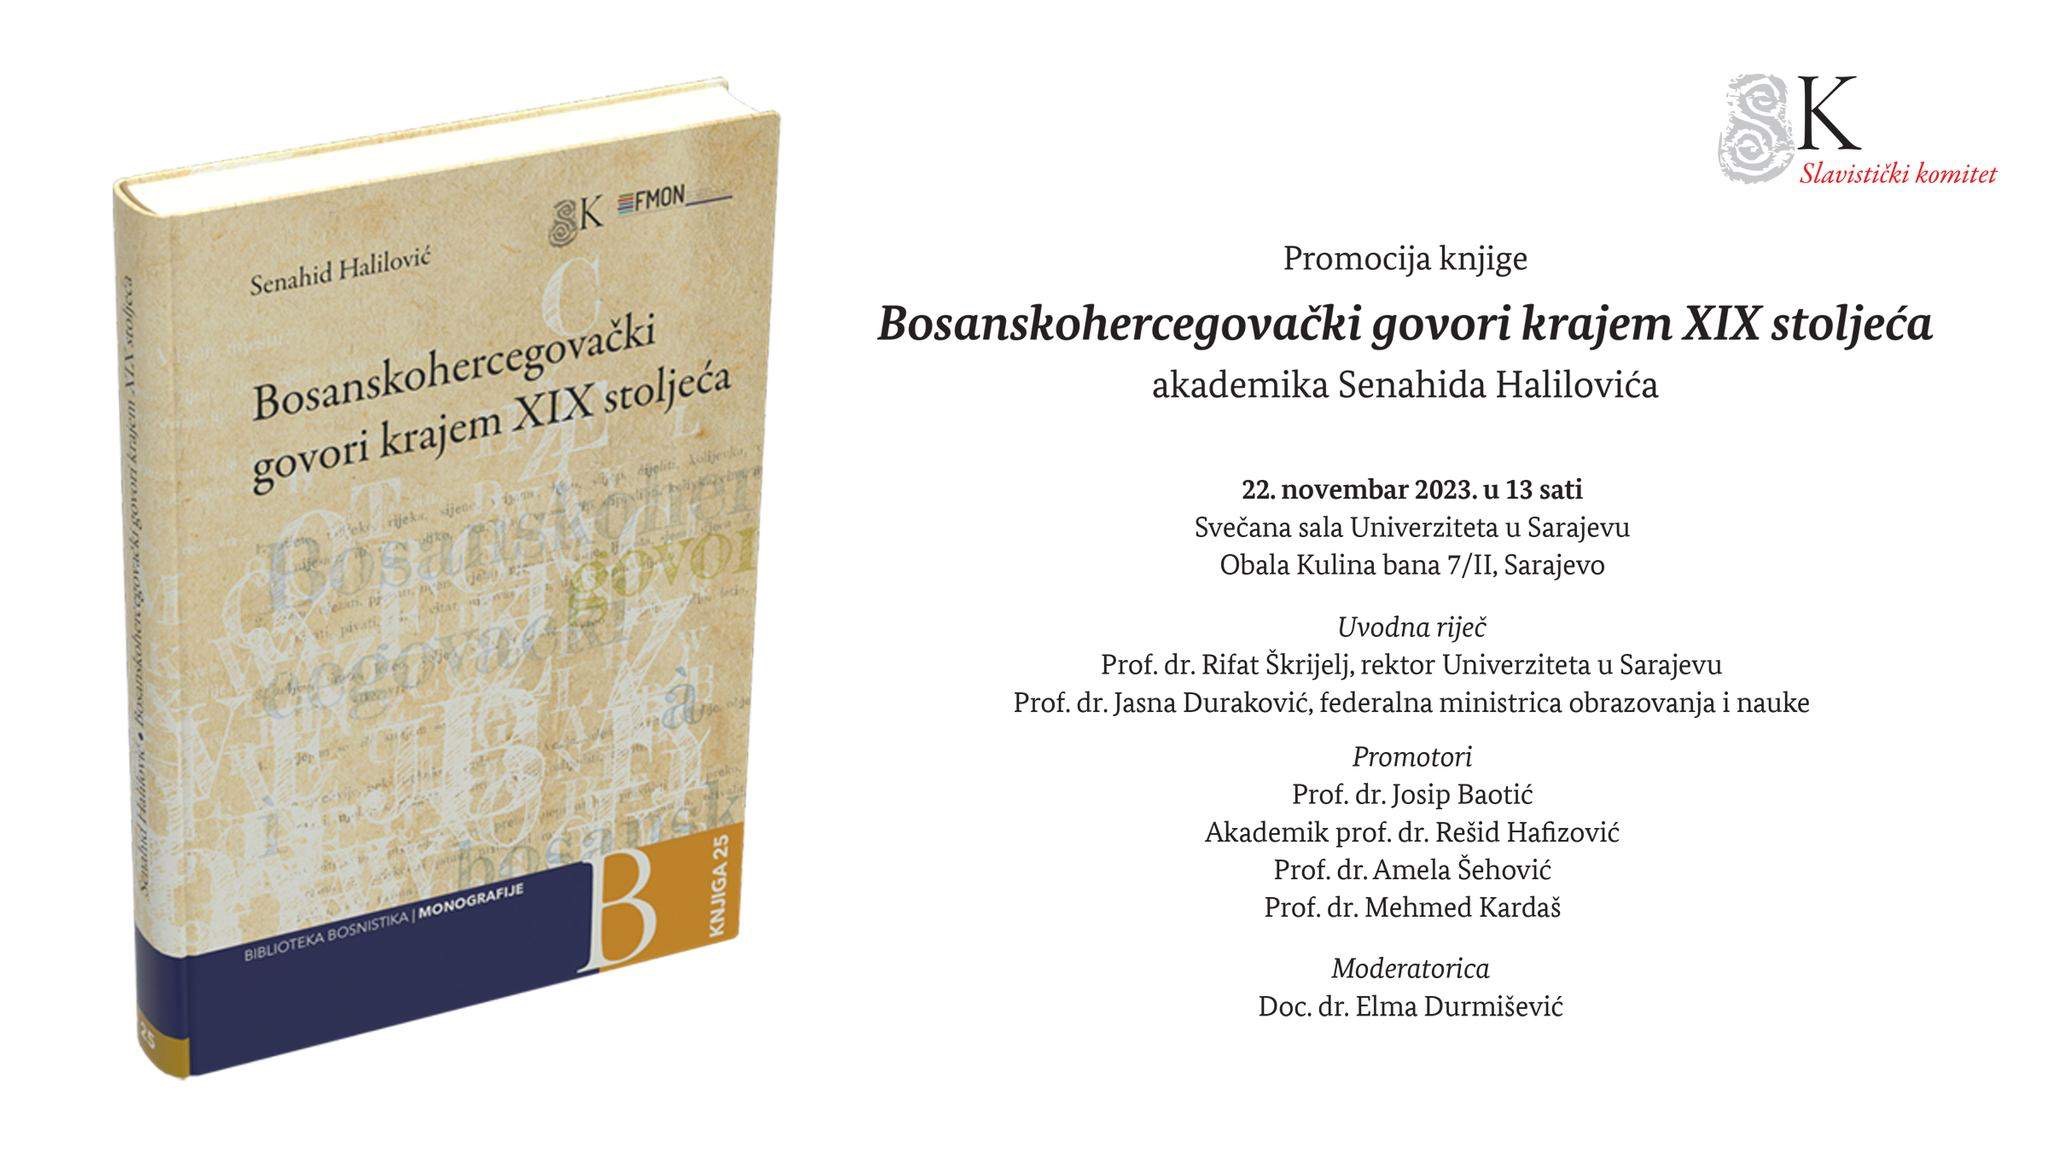 Promocija knjige "Bosanskohercegovački govori krajem XIX stoljeća" 22. novembra